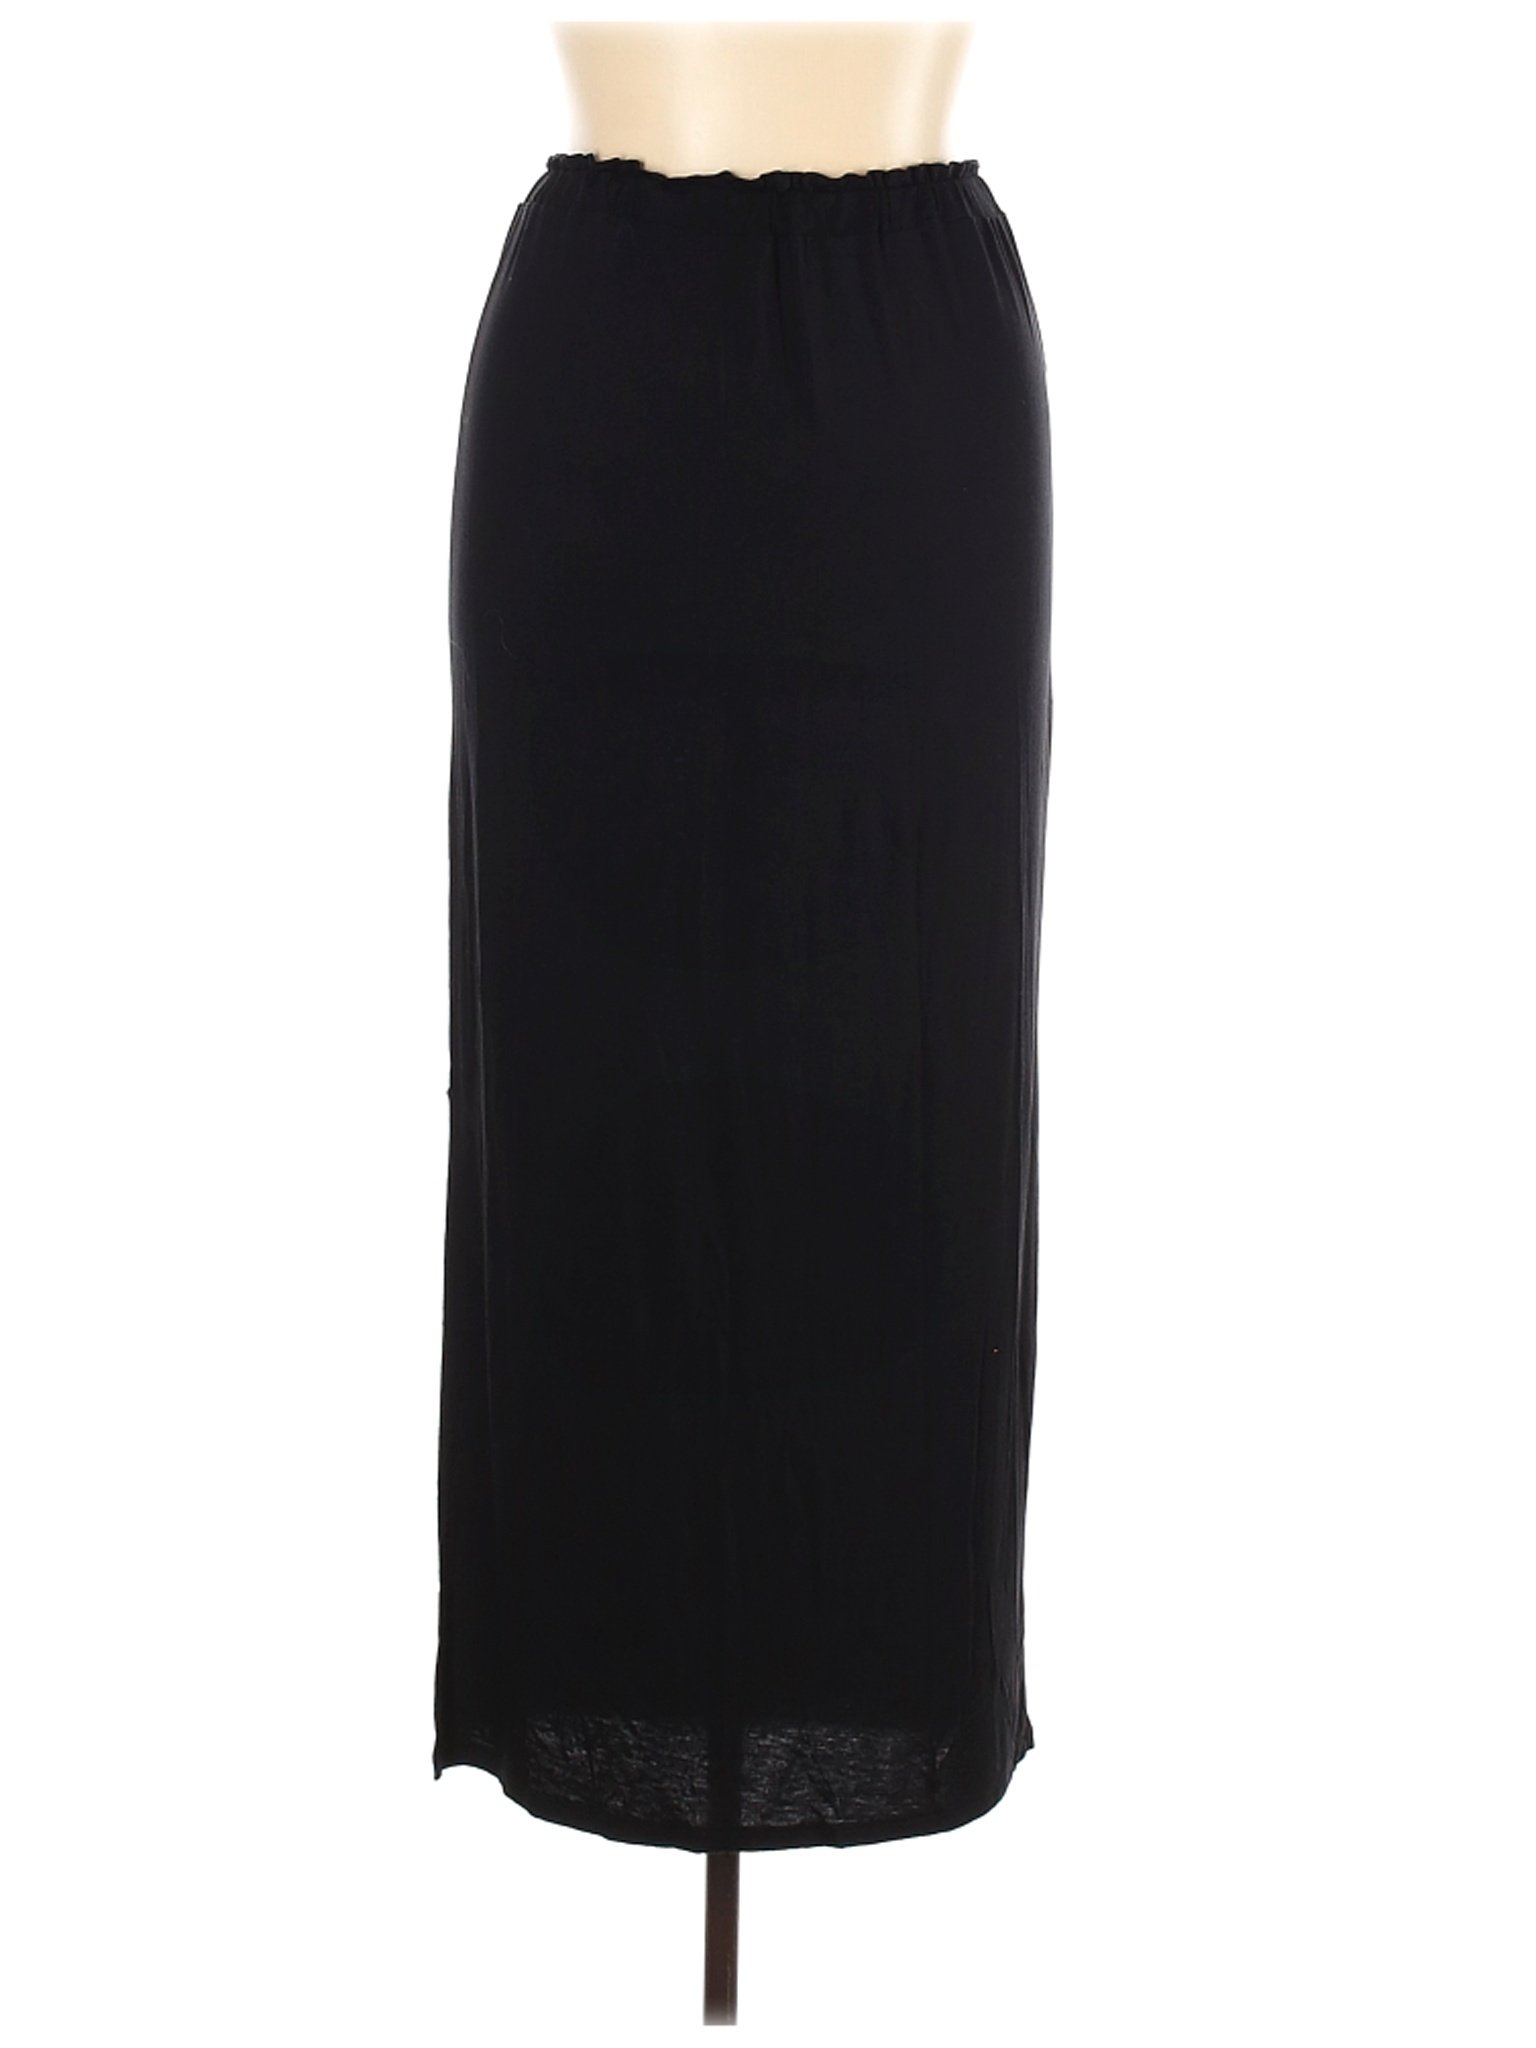 Primark Women Black Casual Skirt 14 | eBay